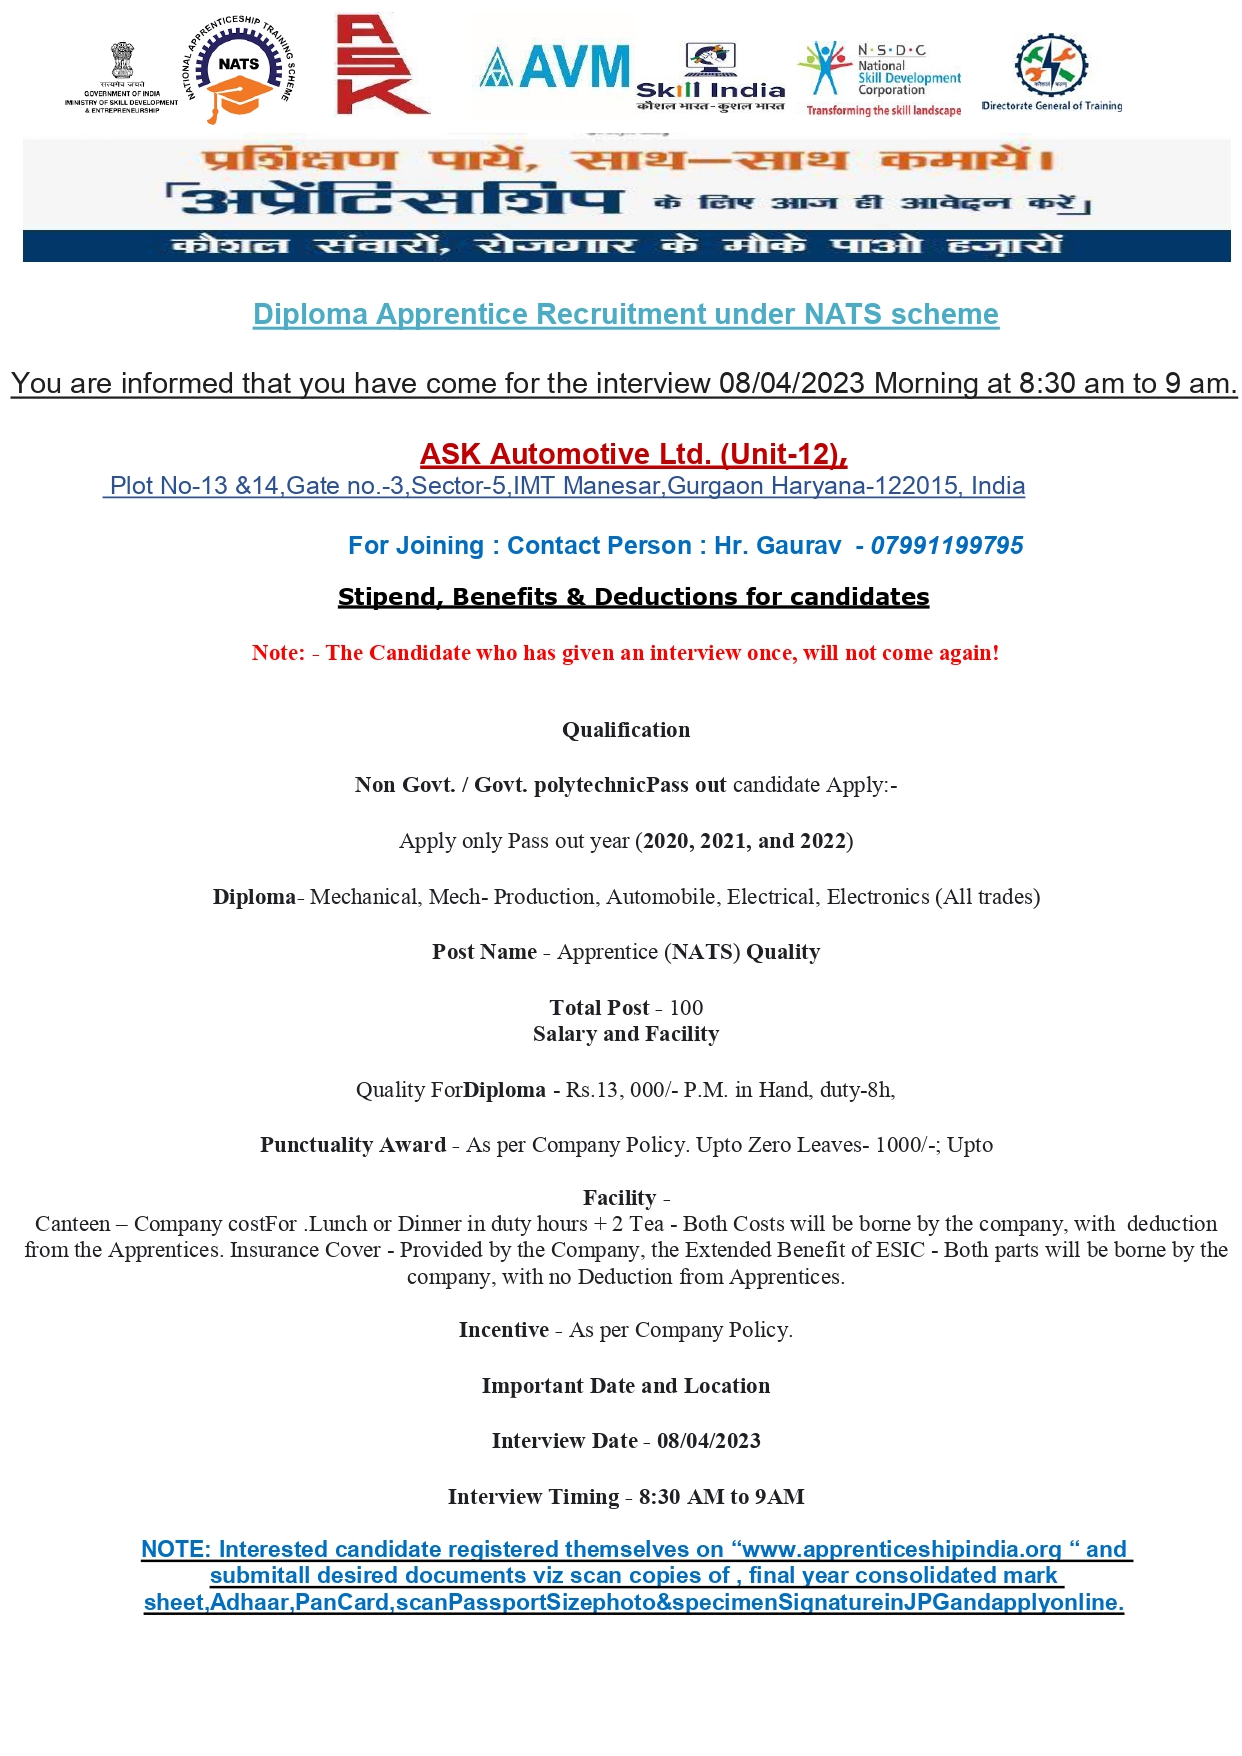 Ask Automotive Pvt Ltd job vacancy 2023